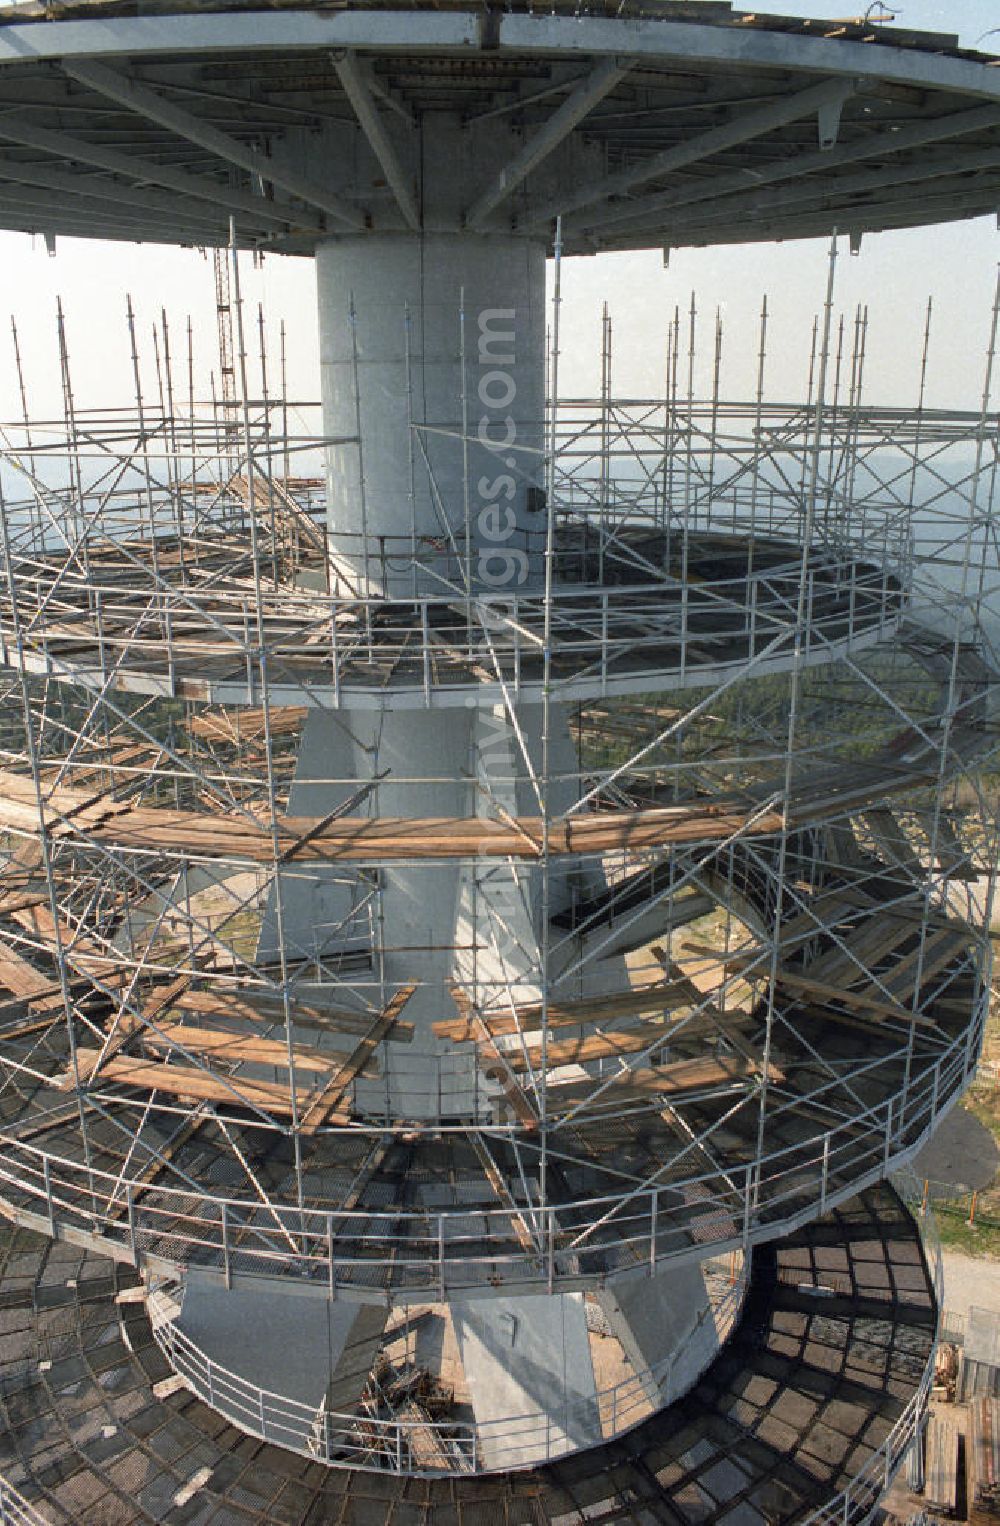 GDR photo archive: Schierke - Eingerüsteter Sendemast / neuer Fernsehturm auf dem Brocken. Der 1973 gebaute Turm hat eine Höhe von 123m. Ende der Rekonstruktion war 1993.